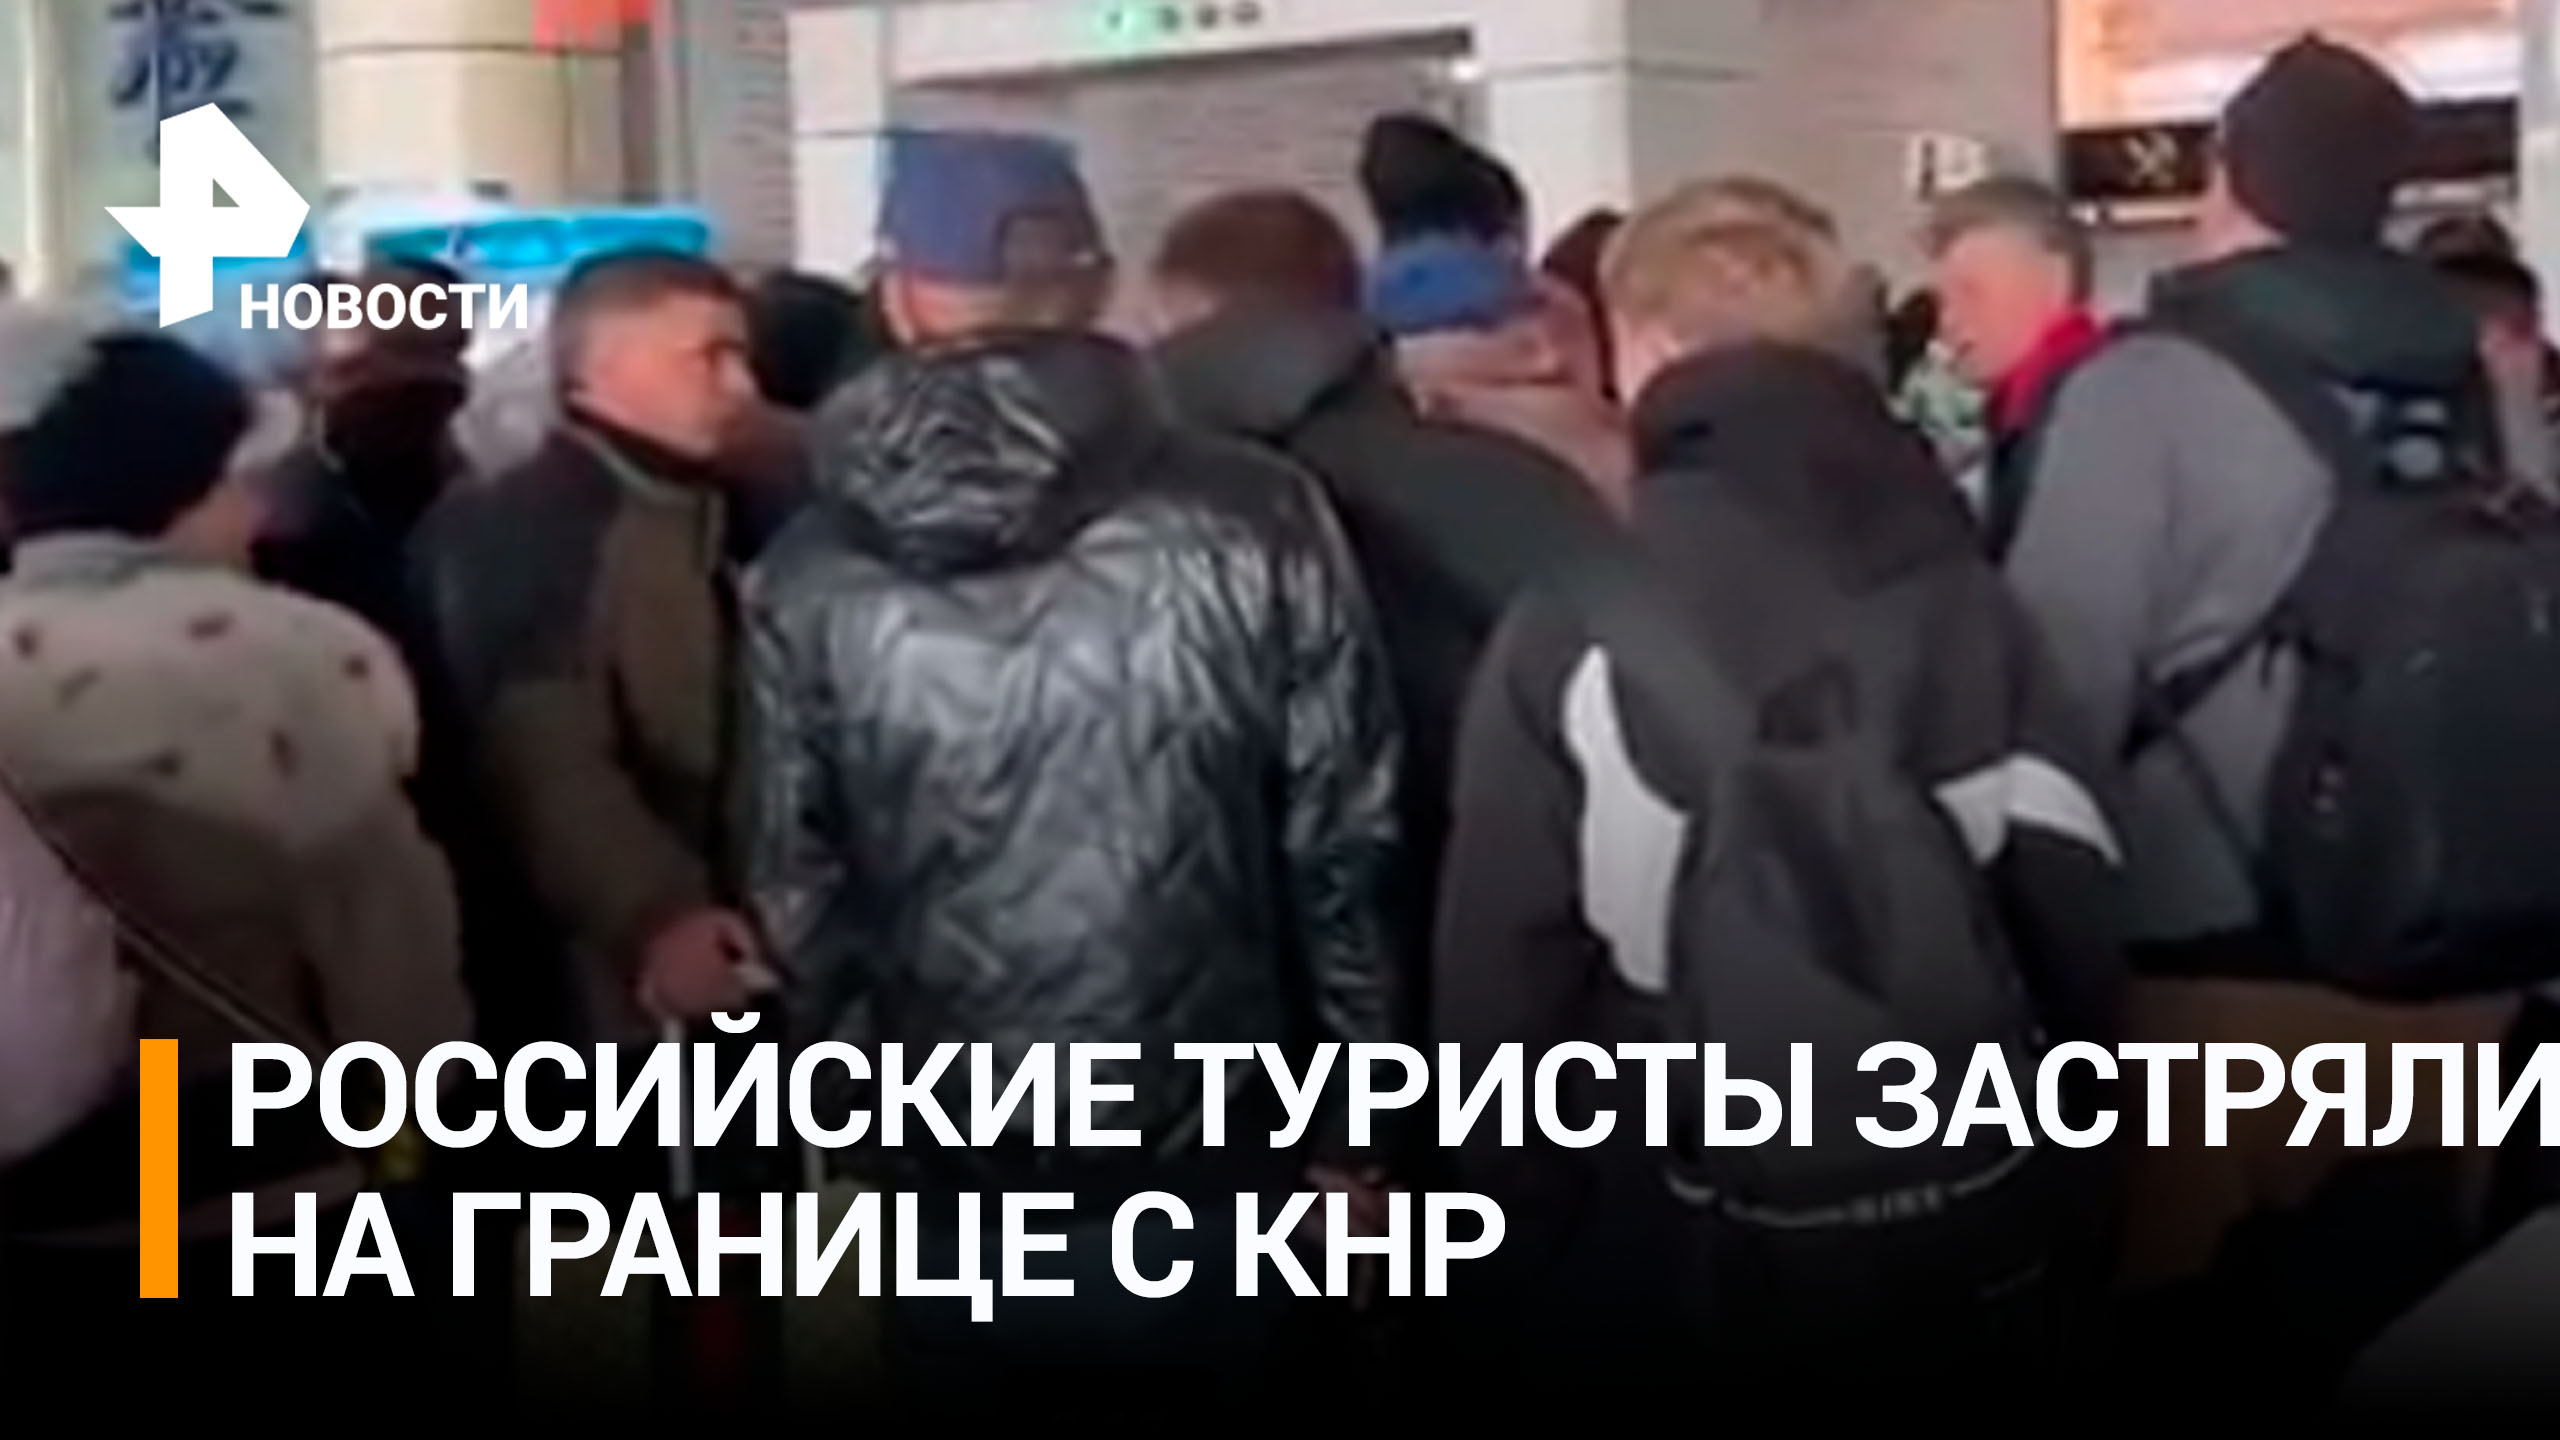 Сотни российских туристов застряли на границе с Китаем / РЕН Новости